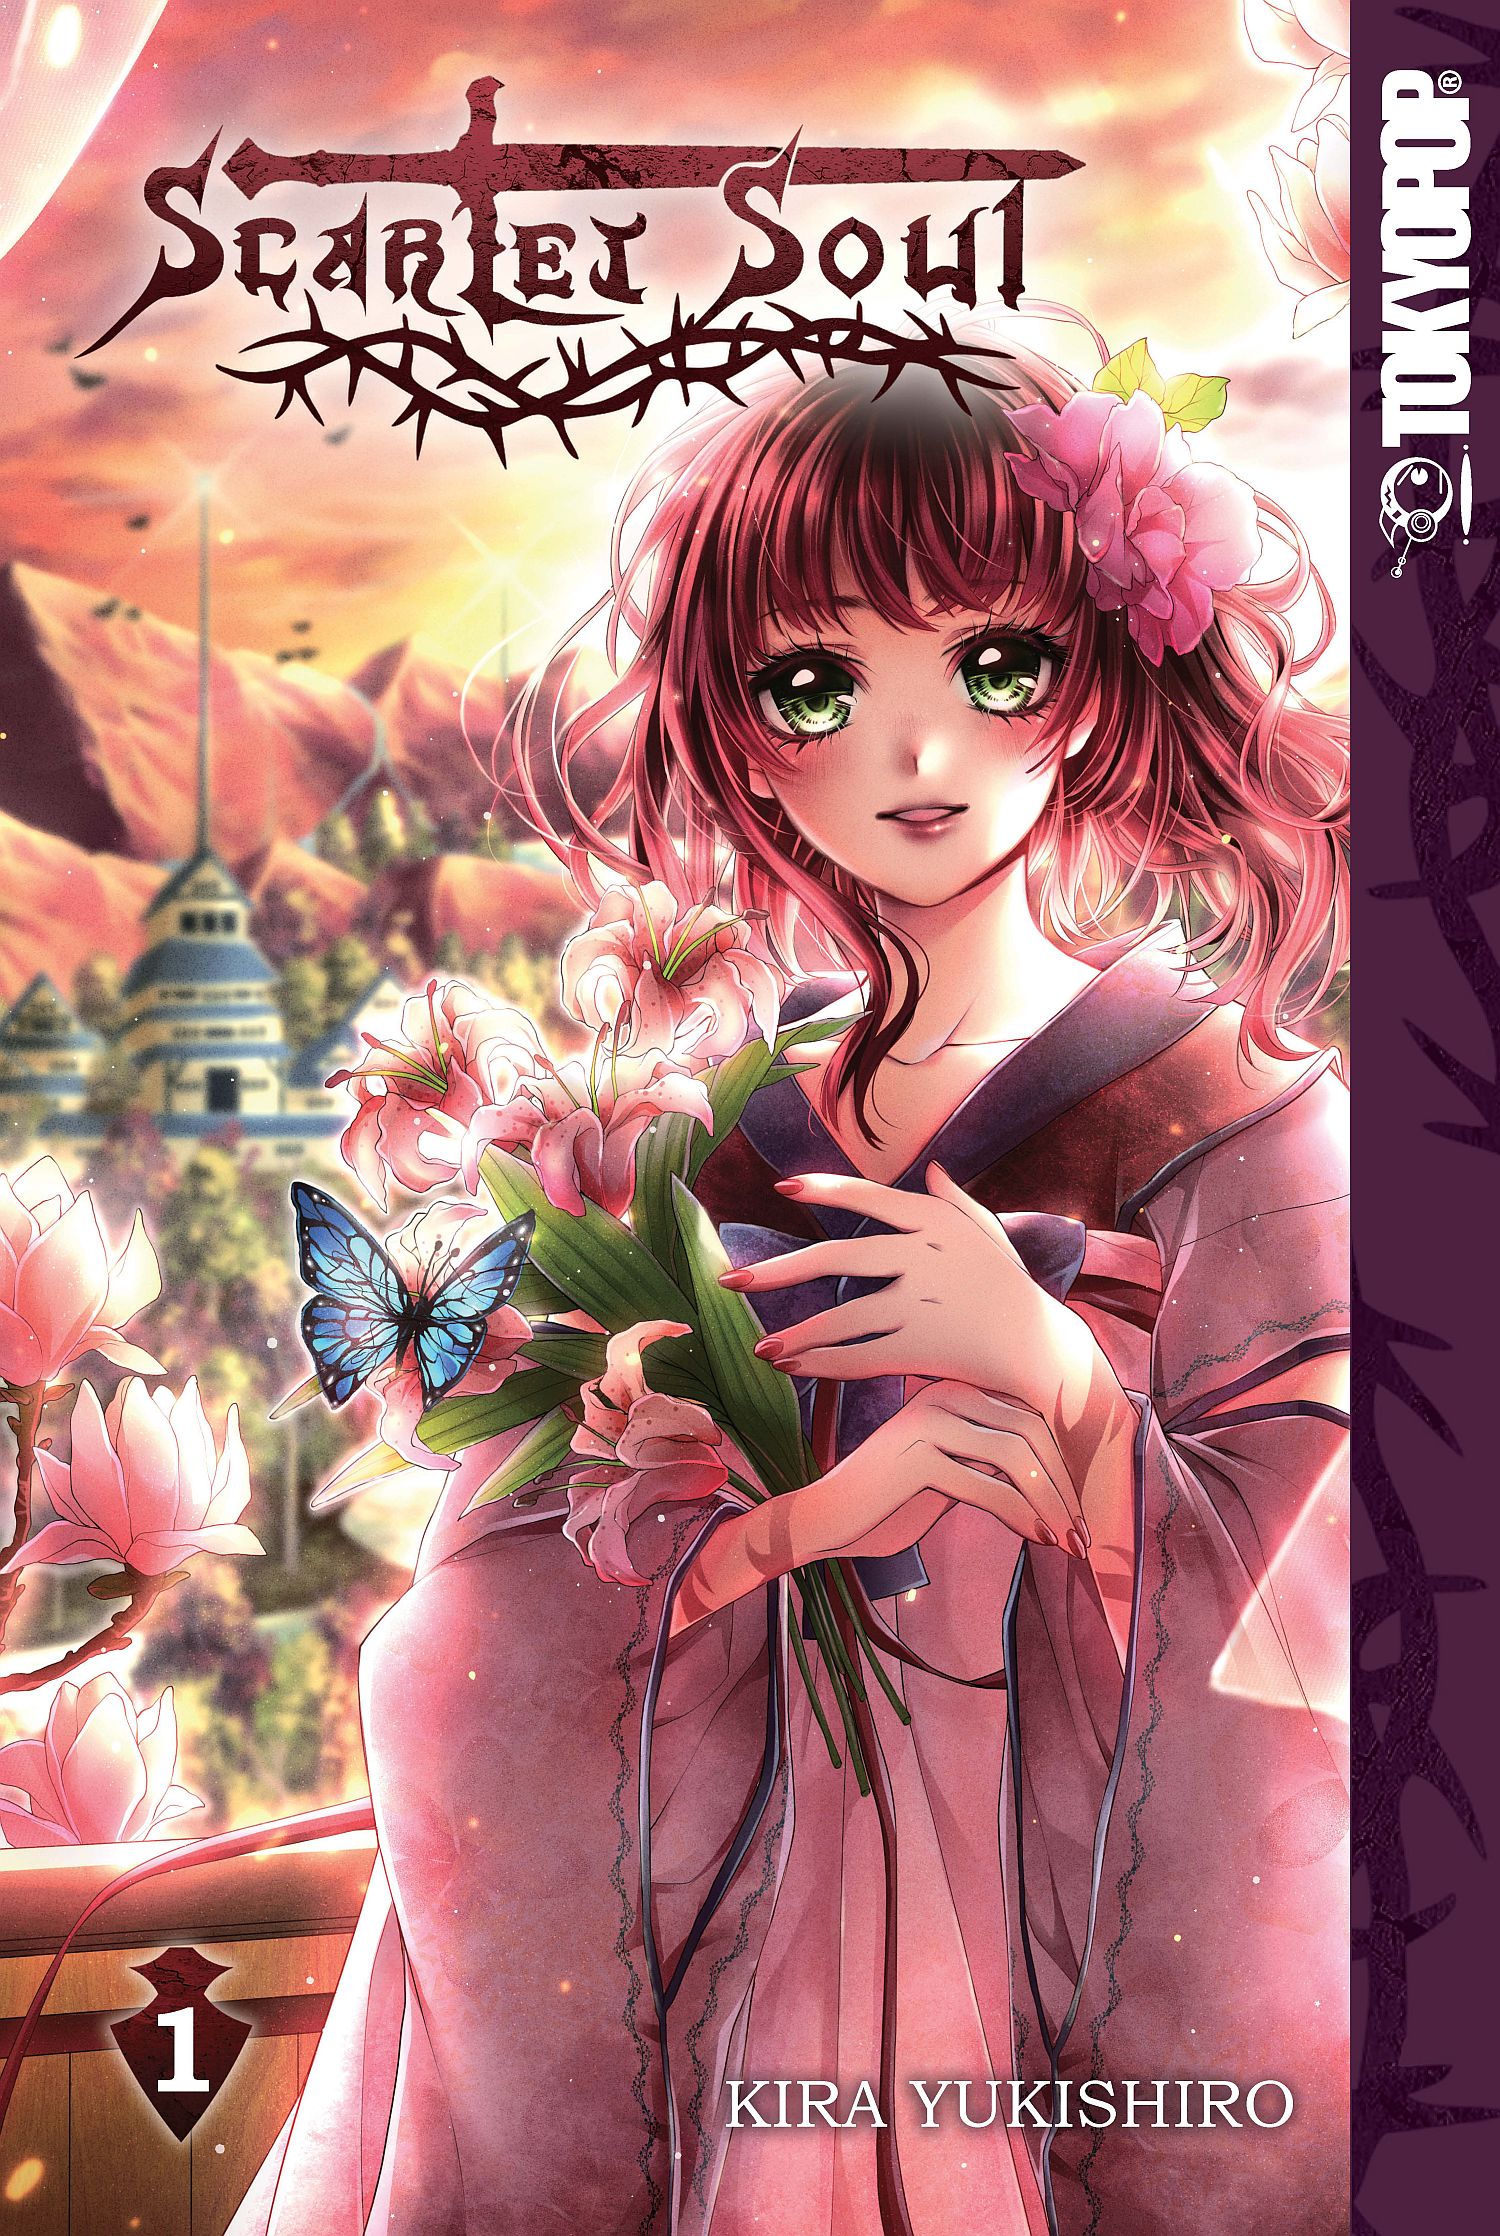 Scarlet Soul Manga Manga Volume 1